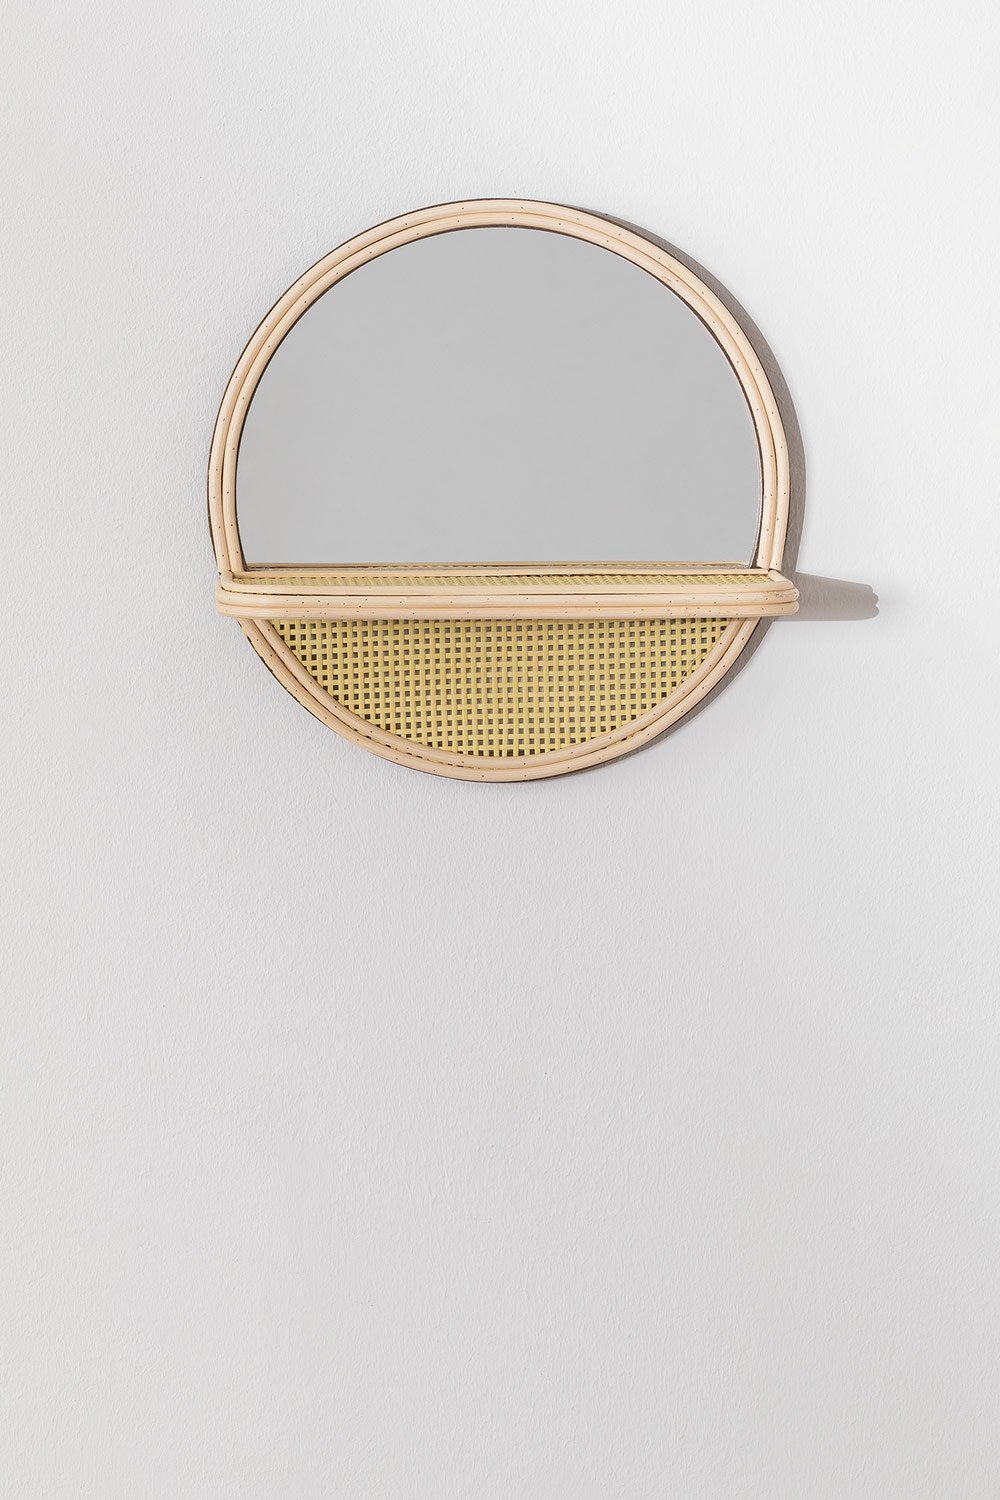 Specchio da parete rotondo con mensola in legno di pino (Ø30) Rykker, immagine della galleria 1